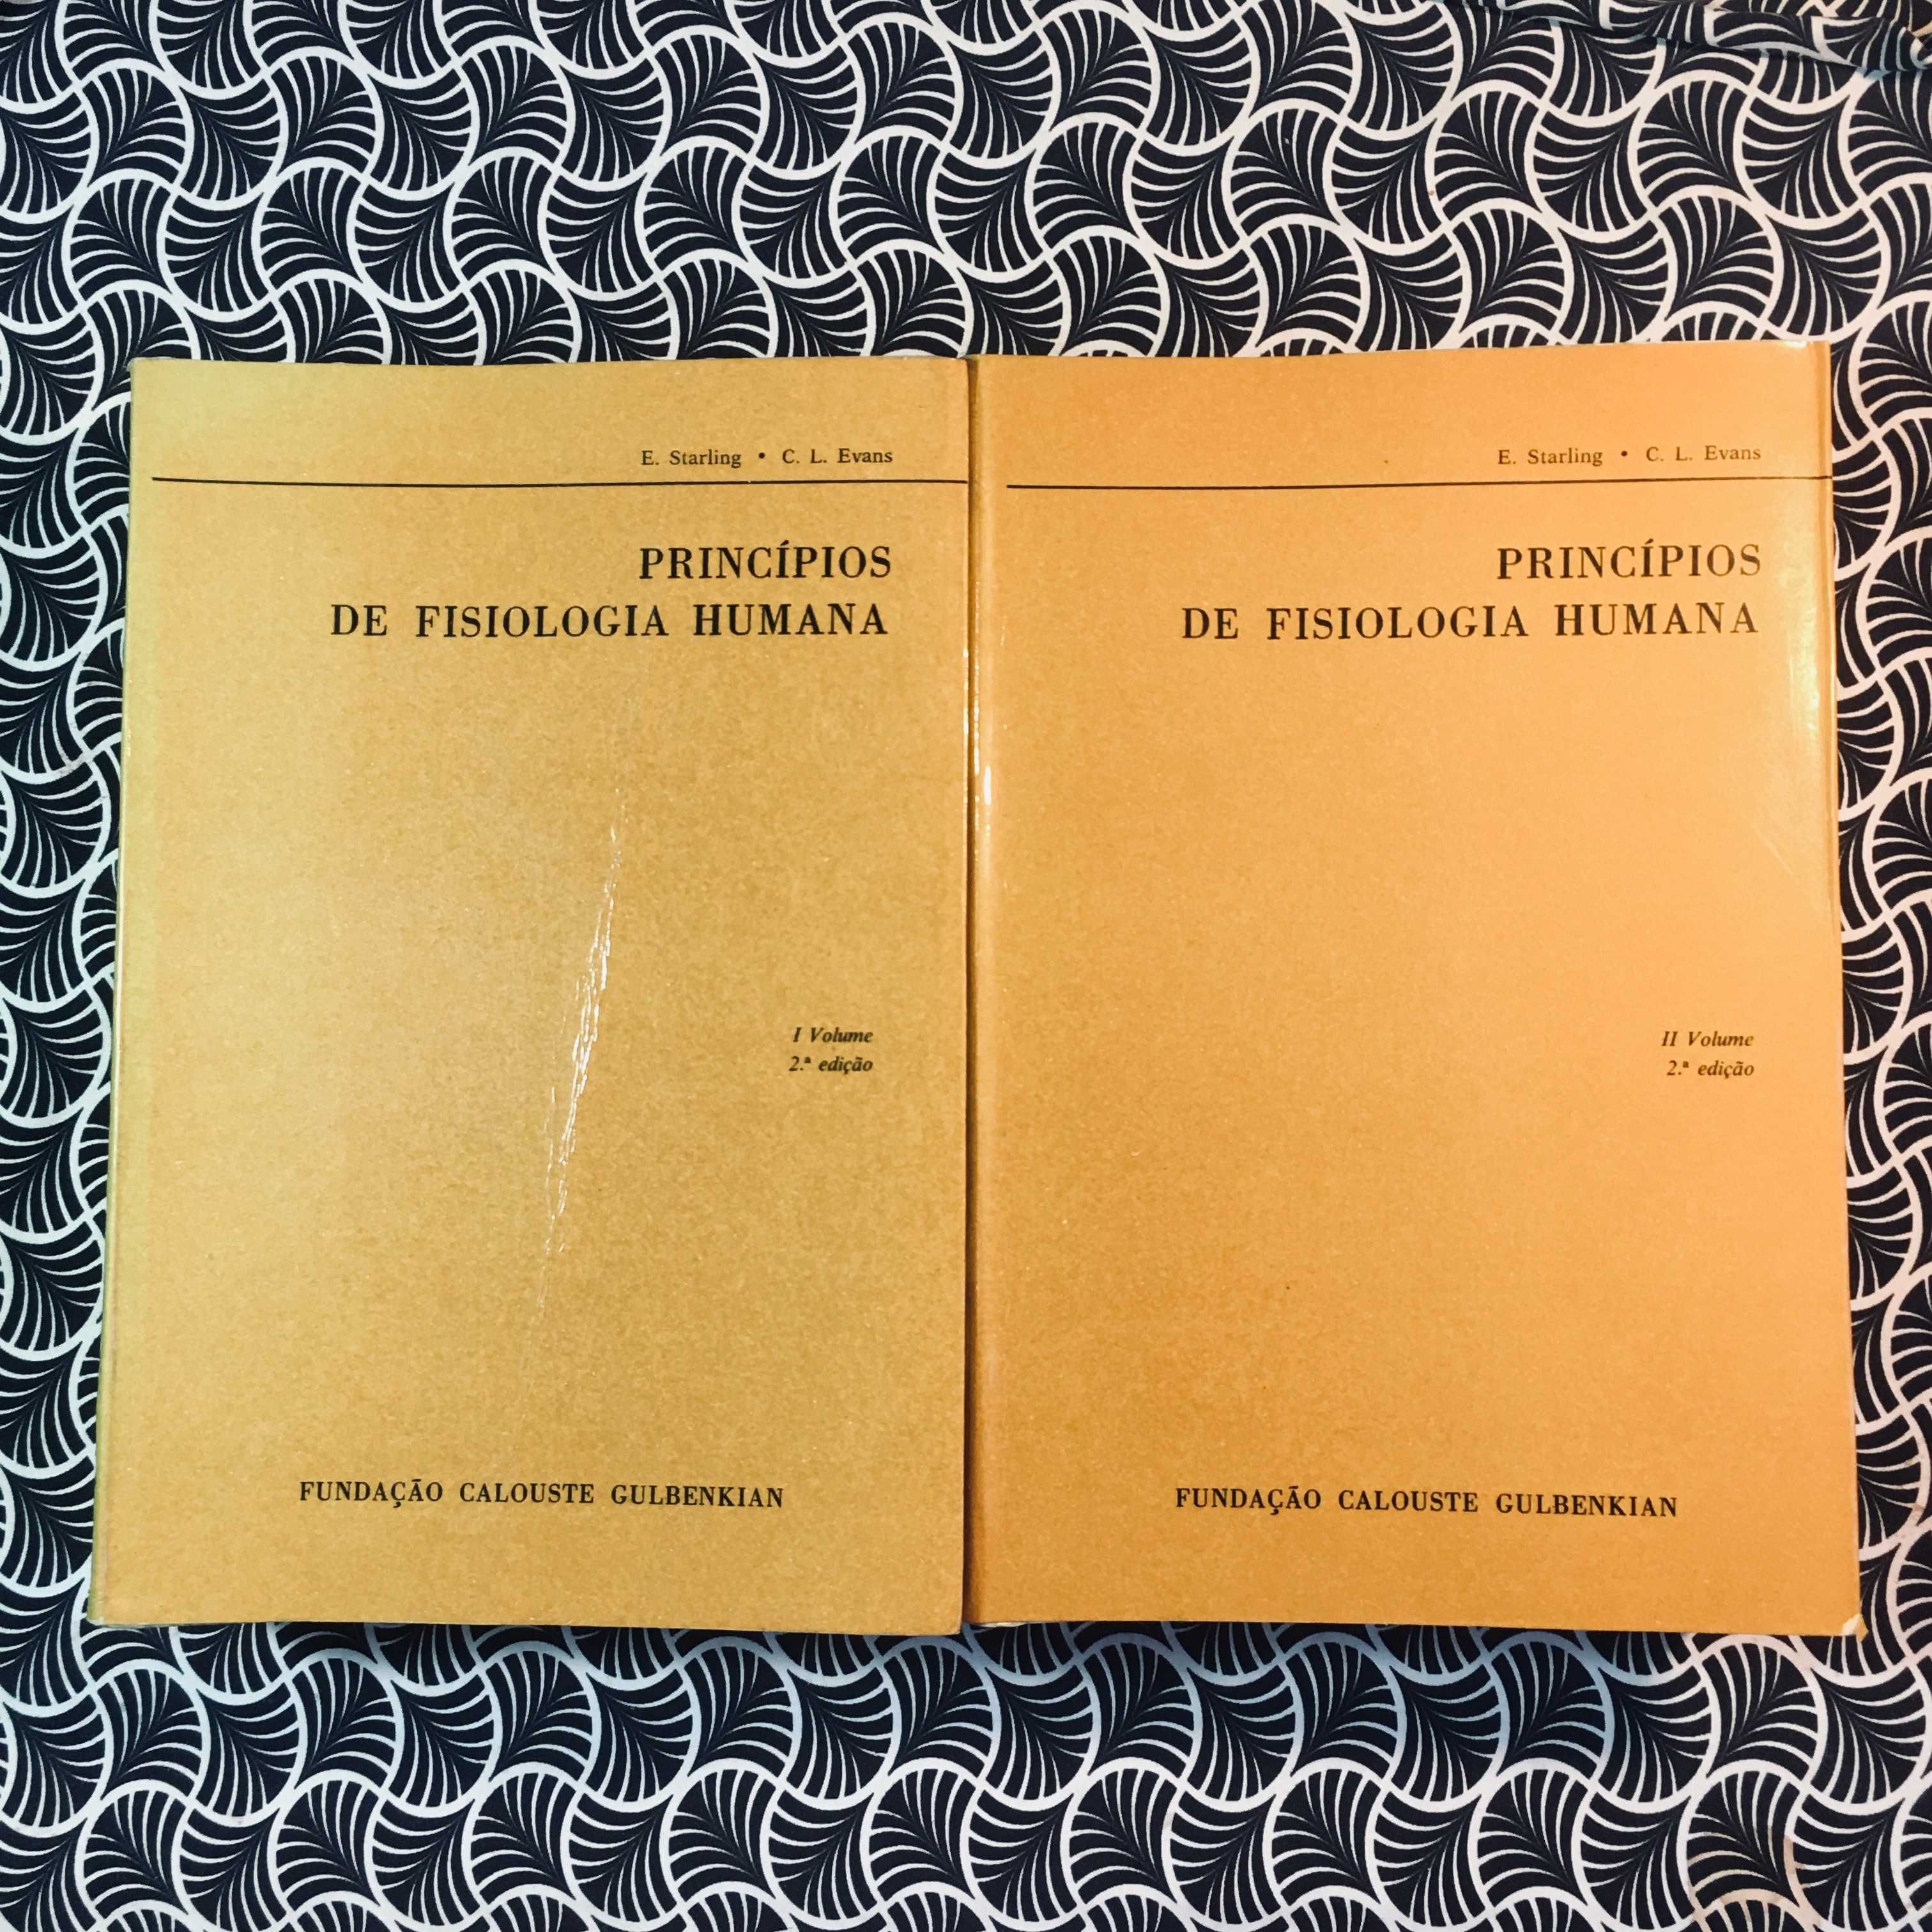 Princípios de Fisiologia Humana (2 vols.) - E. Starling & C. L. Evans